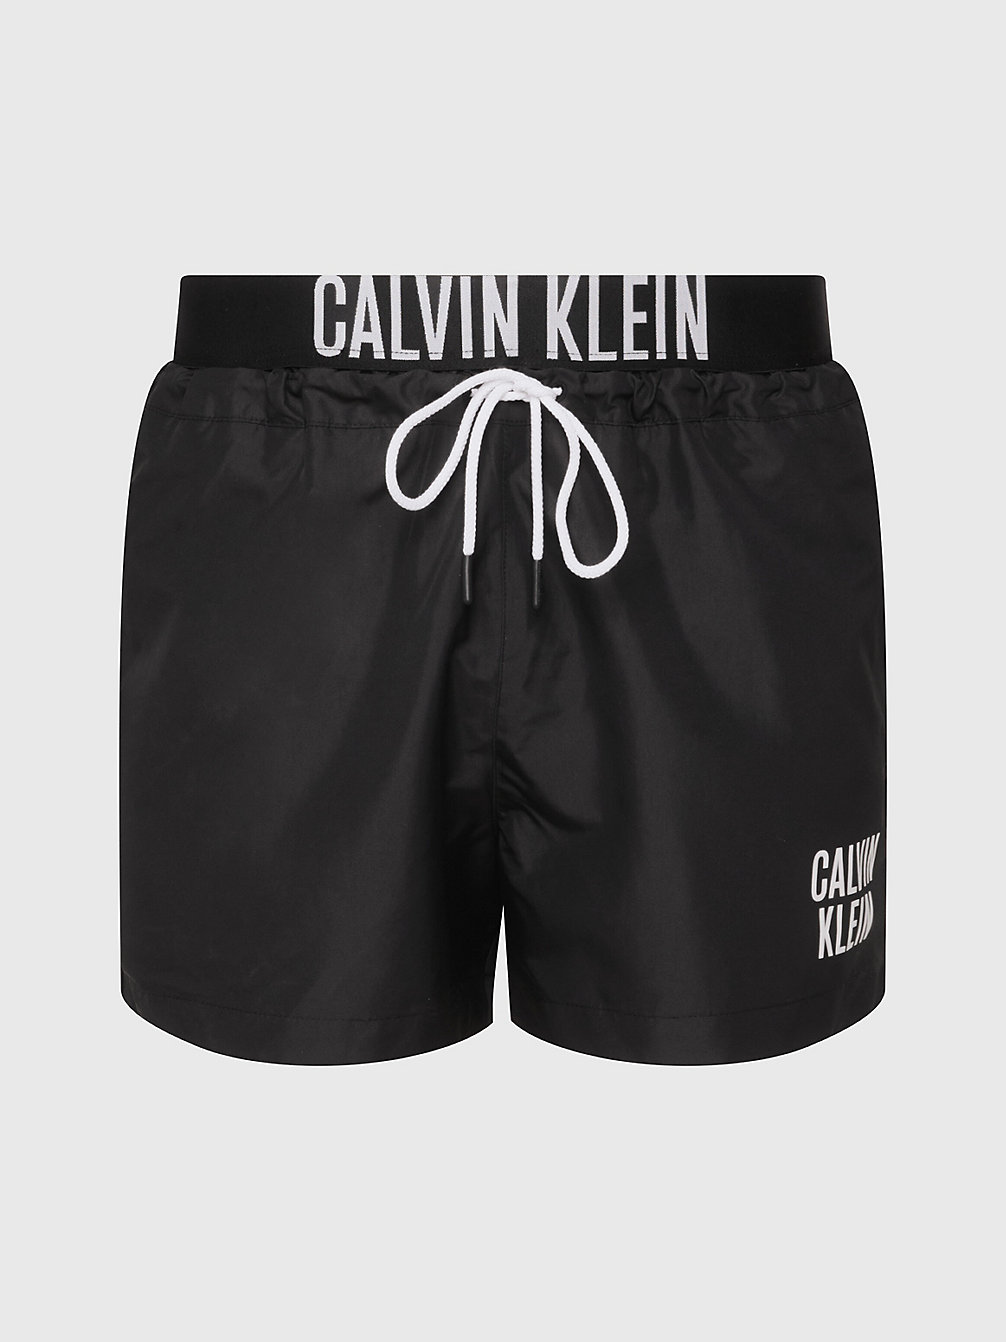 PVH BLACK Badeshorts Mit Doppeltem Bund - Intense Power undefined Herren Calvin Klein